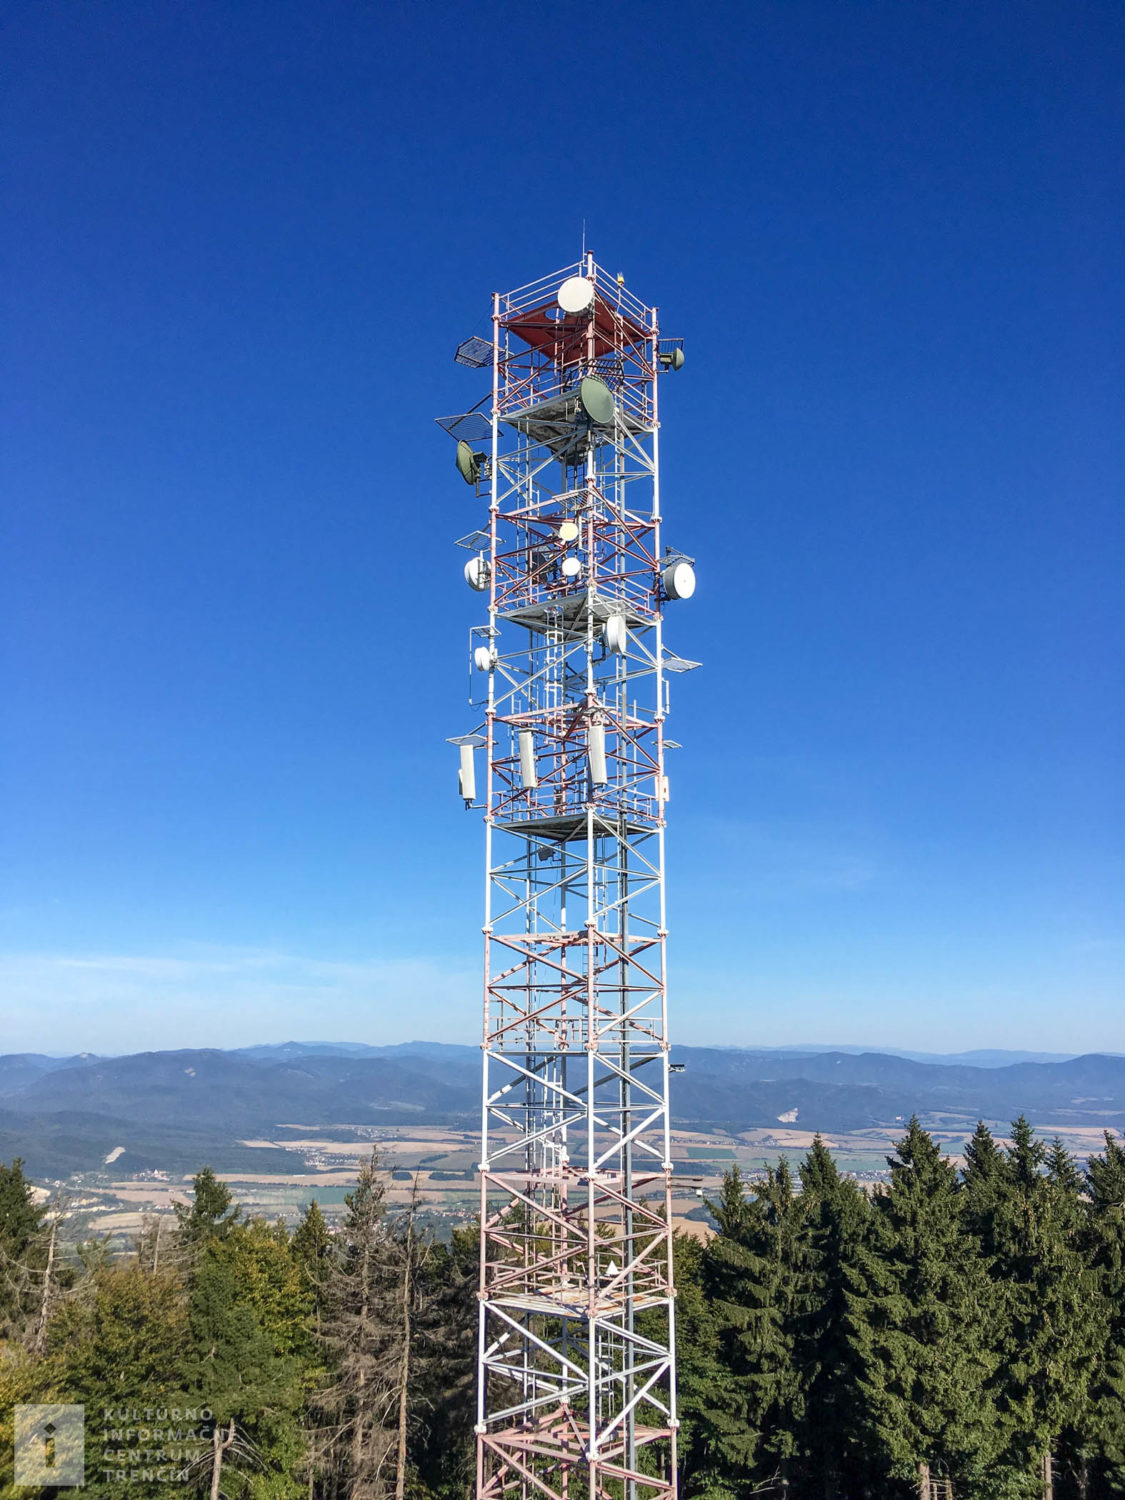 Rozhľadňa na Inovci/Lookout tower on the top of Inovec